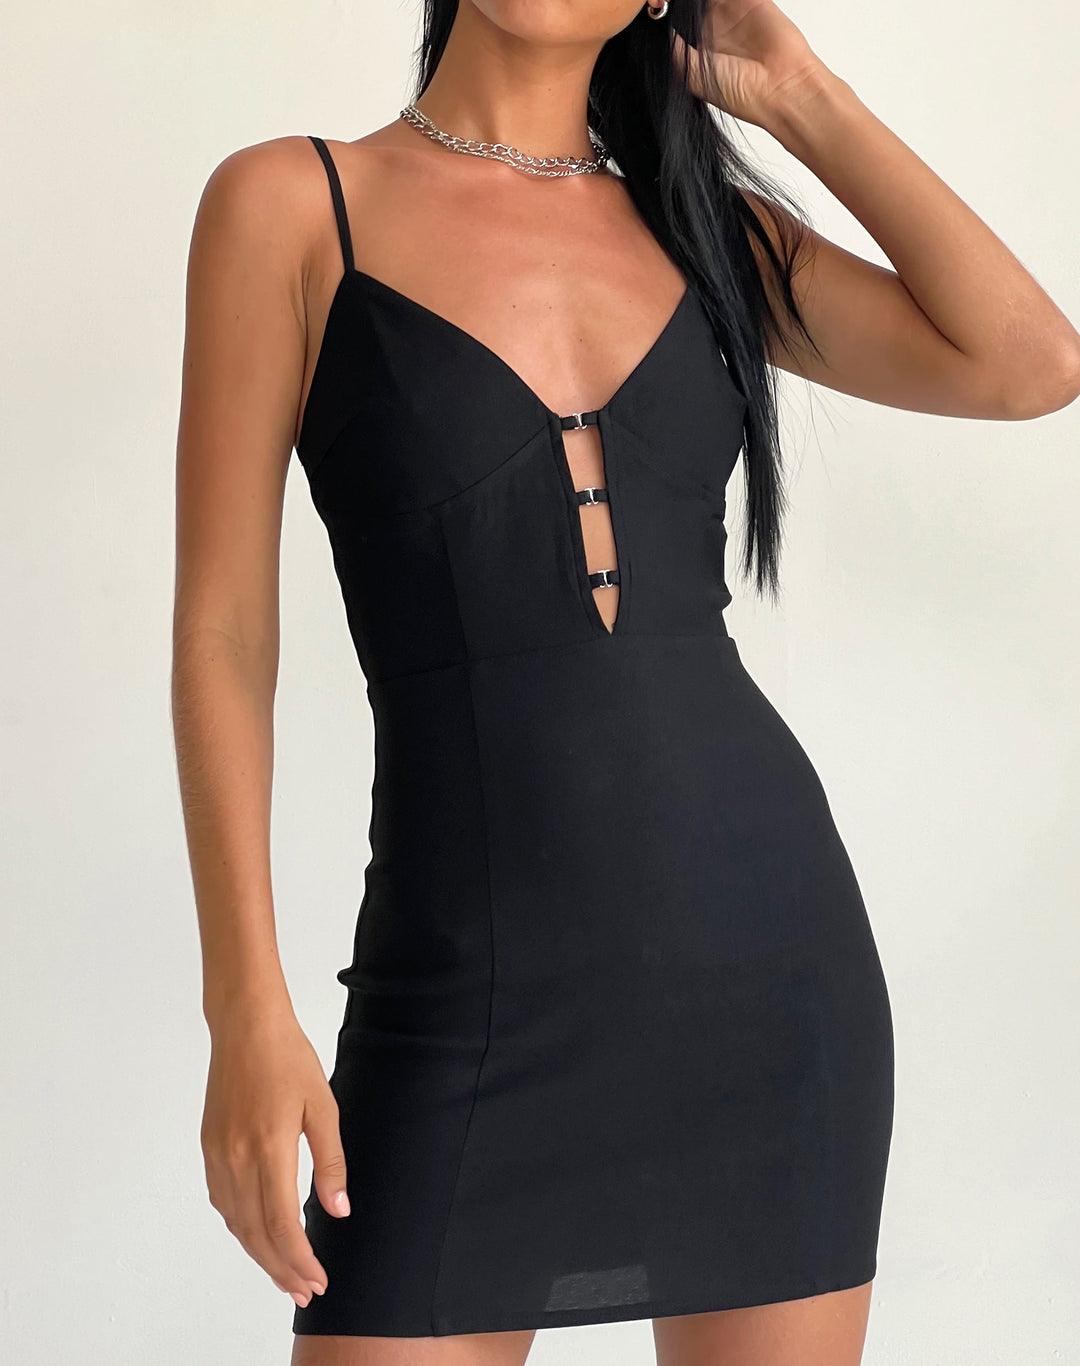 Sevila Mini Dress in black